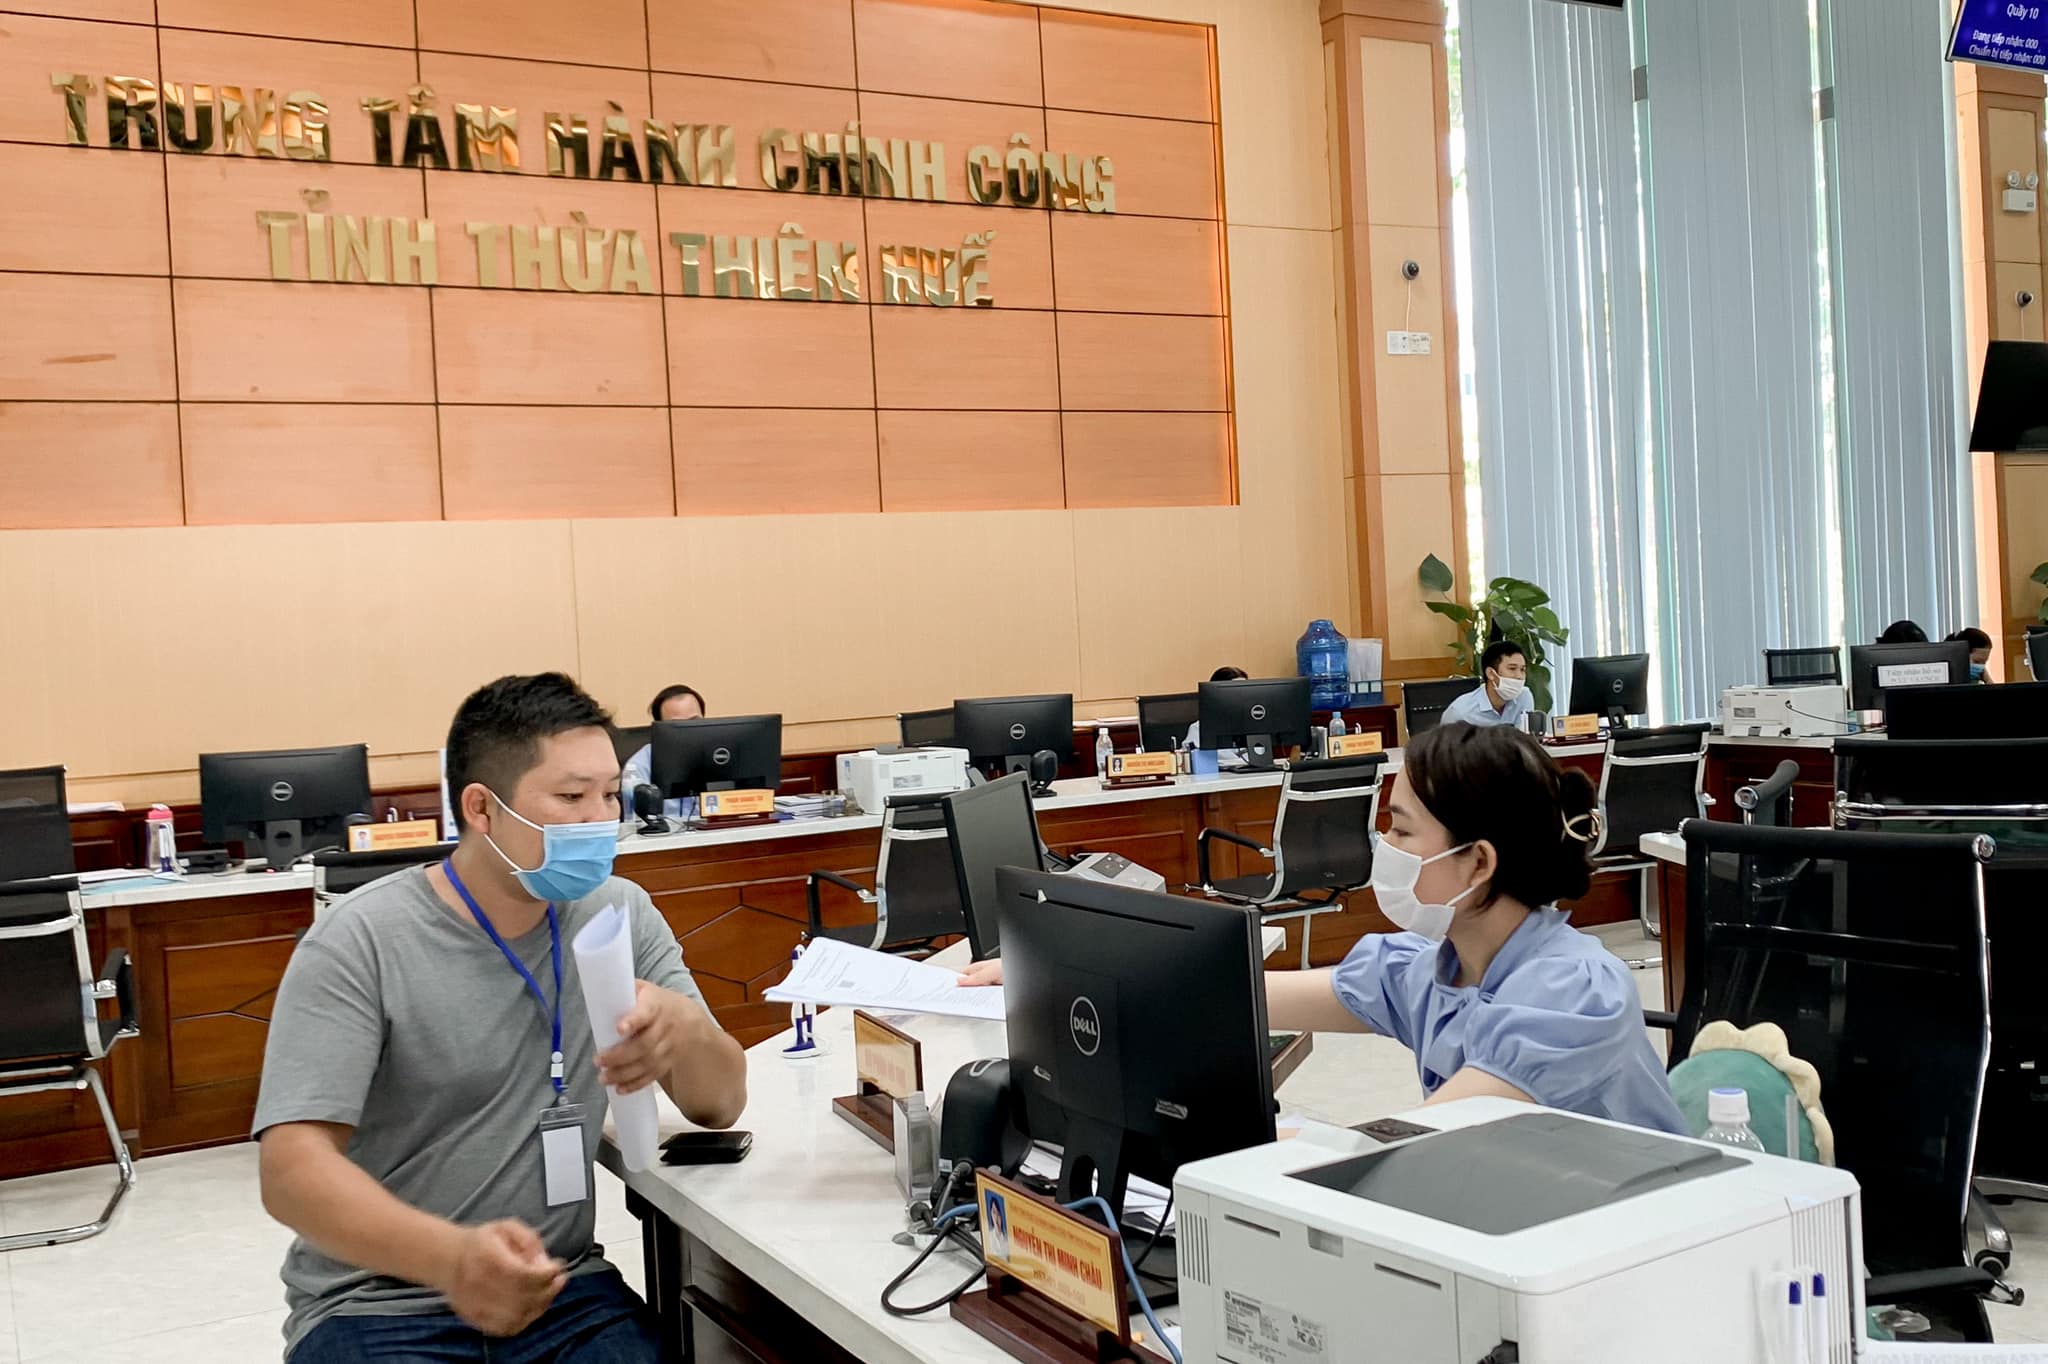 Với mức tăng 9 bậc so với năm 2020, Thừa Thiên Huế vươn lên đứng đầu toàn quốc trong bảng xếp hạng về chỉ số hiệu quả quản trị và hành chính công cấp tỉnh (PAPI) năm 2021.